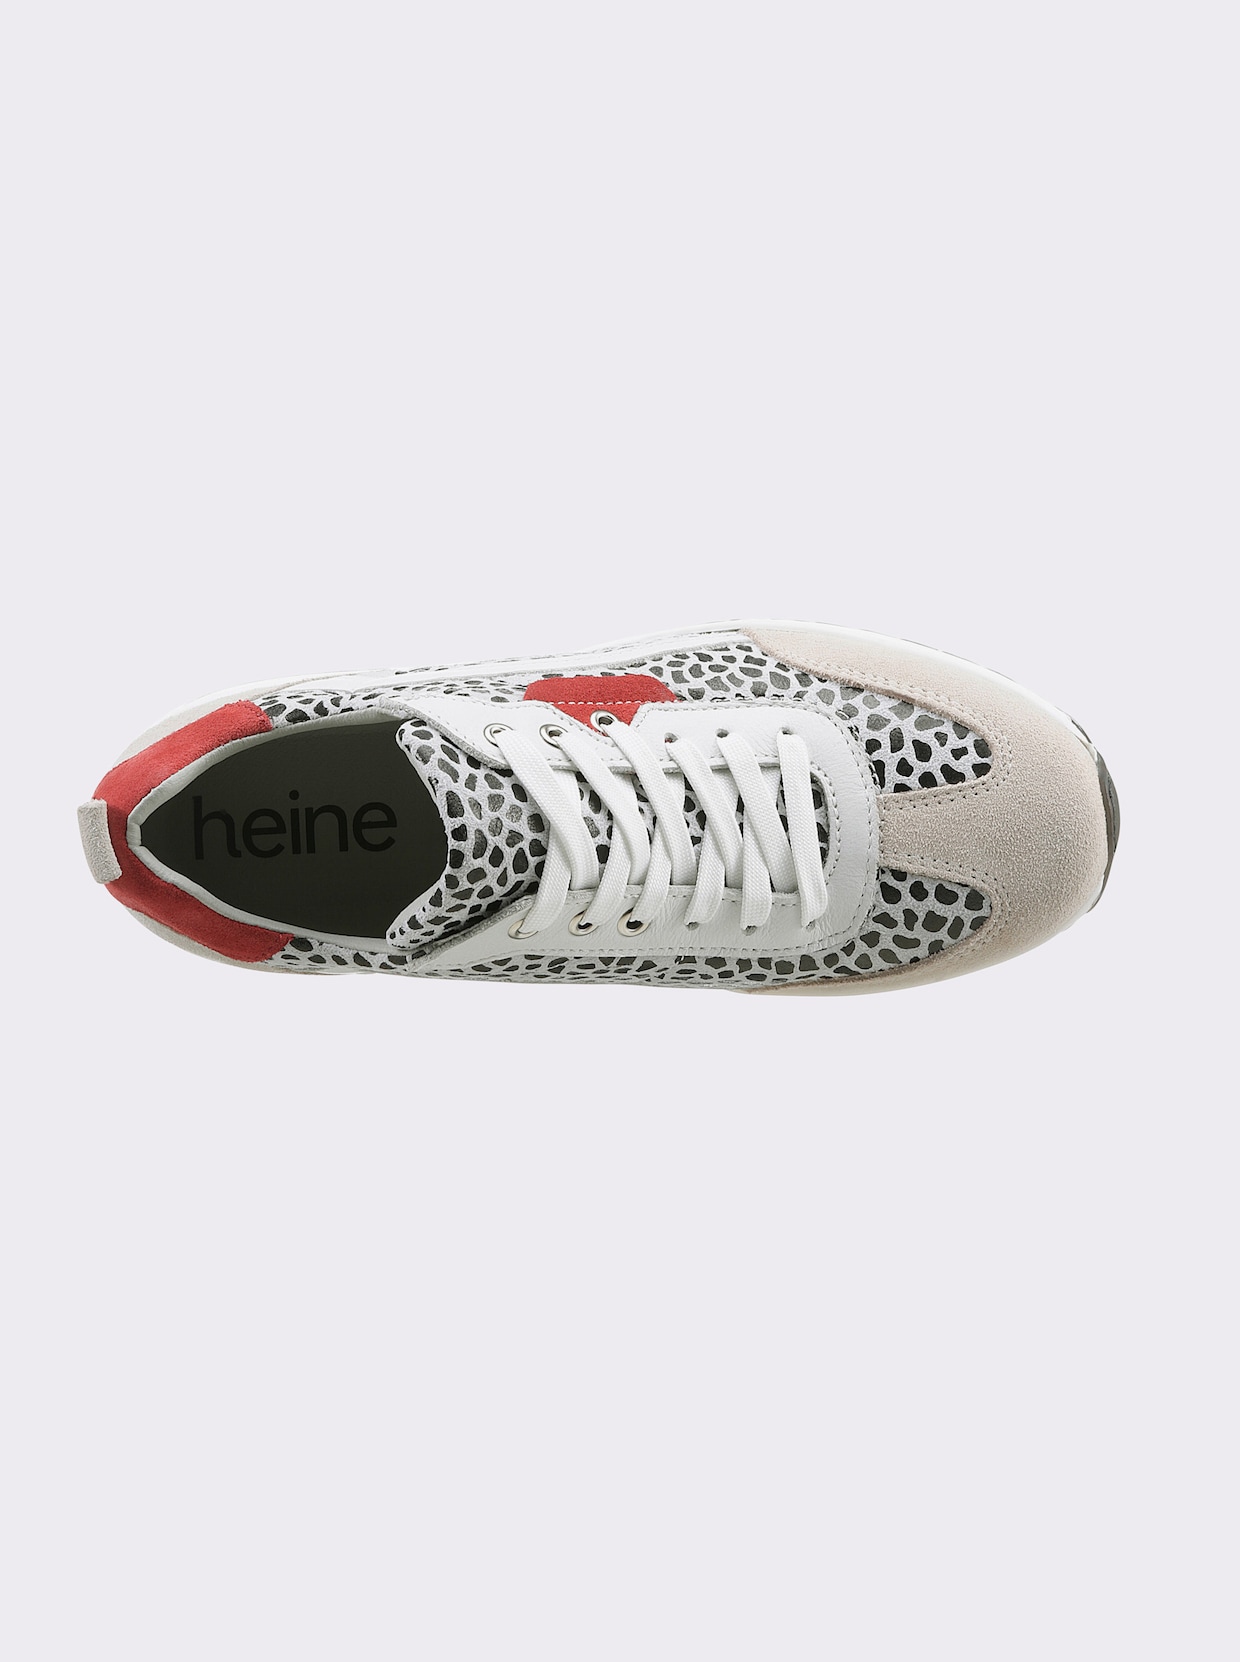 heine Sneaker - grijs/wit gedessineerd